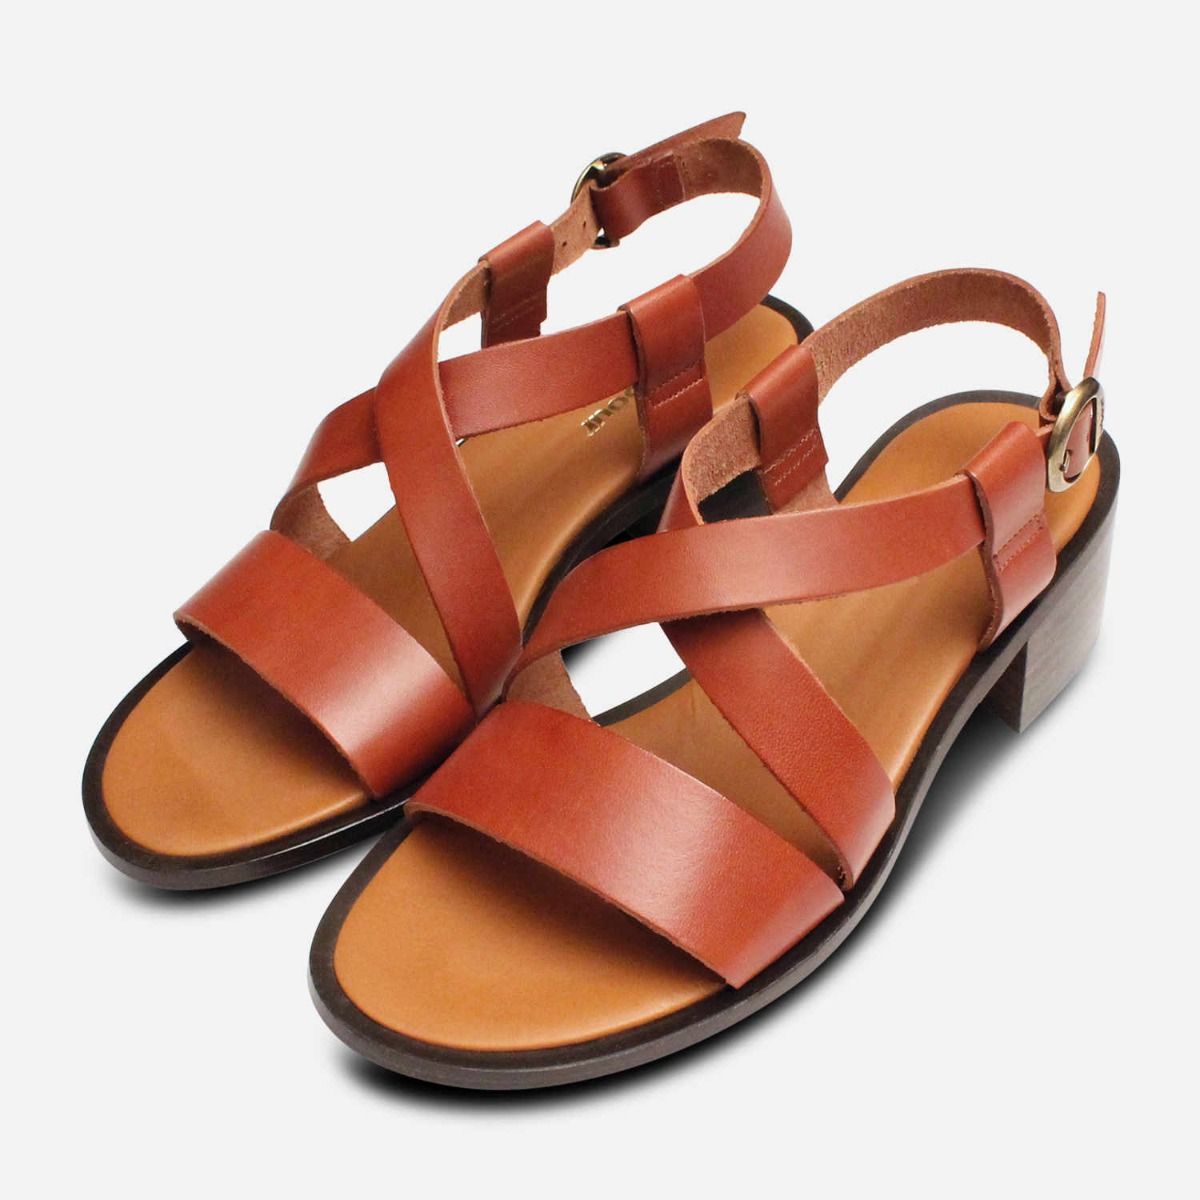 brown summer sandals